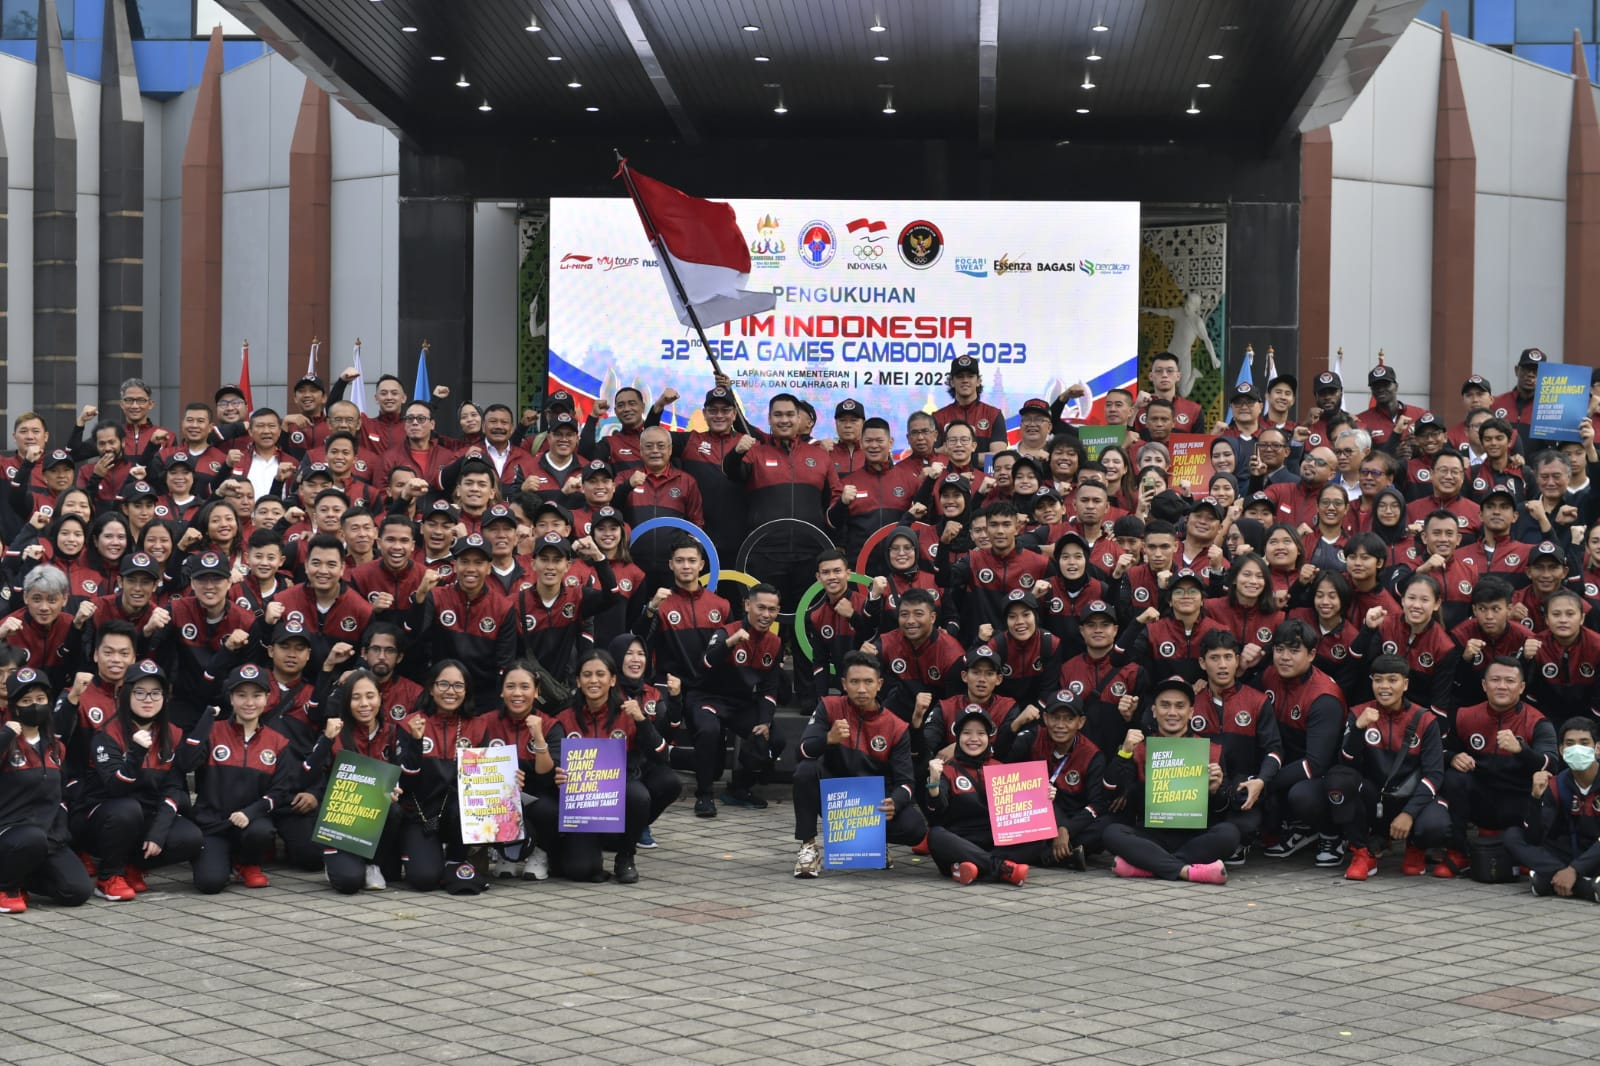 5 Atlet Asal Aceh Ikut SEA Games 2023 Kamboja Mewakili Indonesia